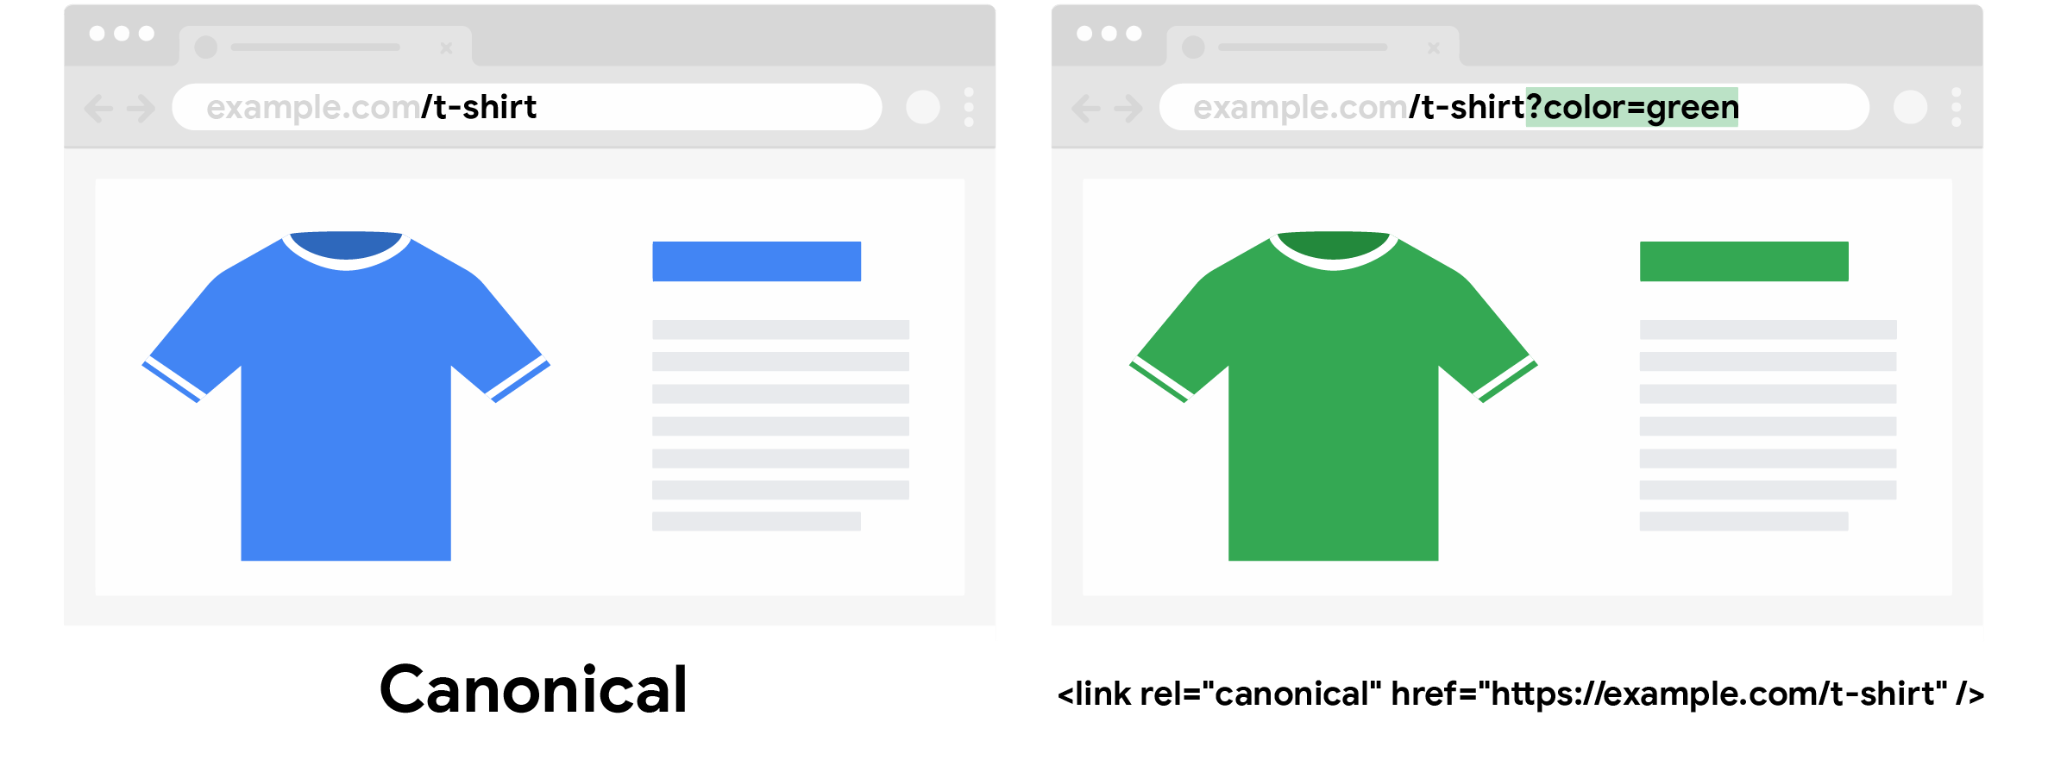 URL canonique du t-shirt bleu, sans paramètre de requête de couleur, et URL non canonique du t-shirt vert dont le paramètre de requête de couleur est spécifié